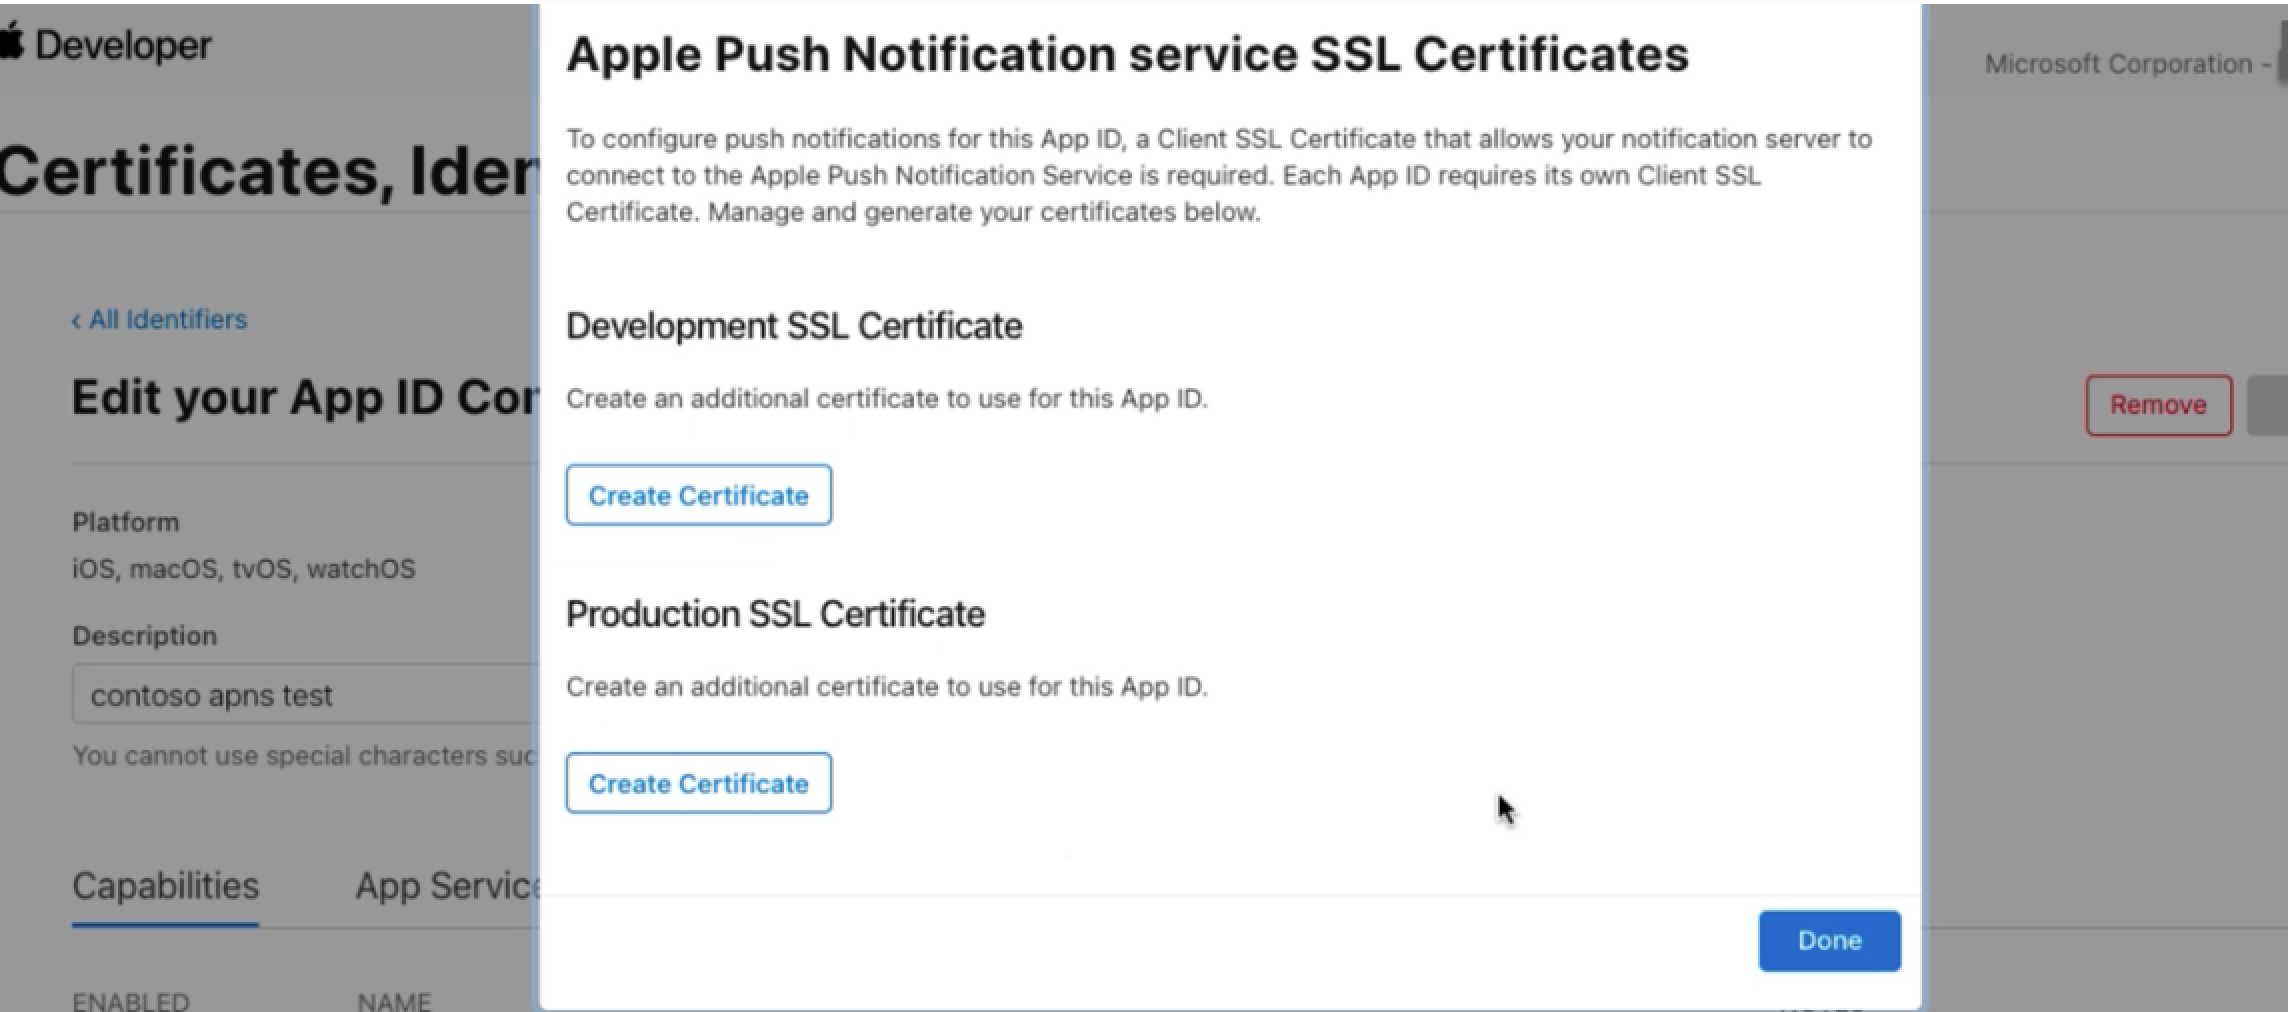 Geliştirme sertifikası veya üretim sertifikası oluşturma seçeneklerini gösteren ekran görüntüsü.